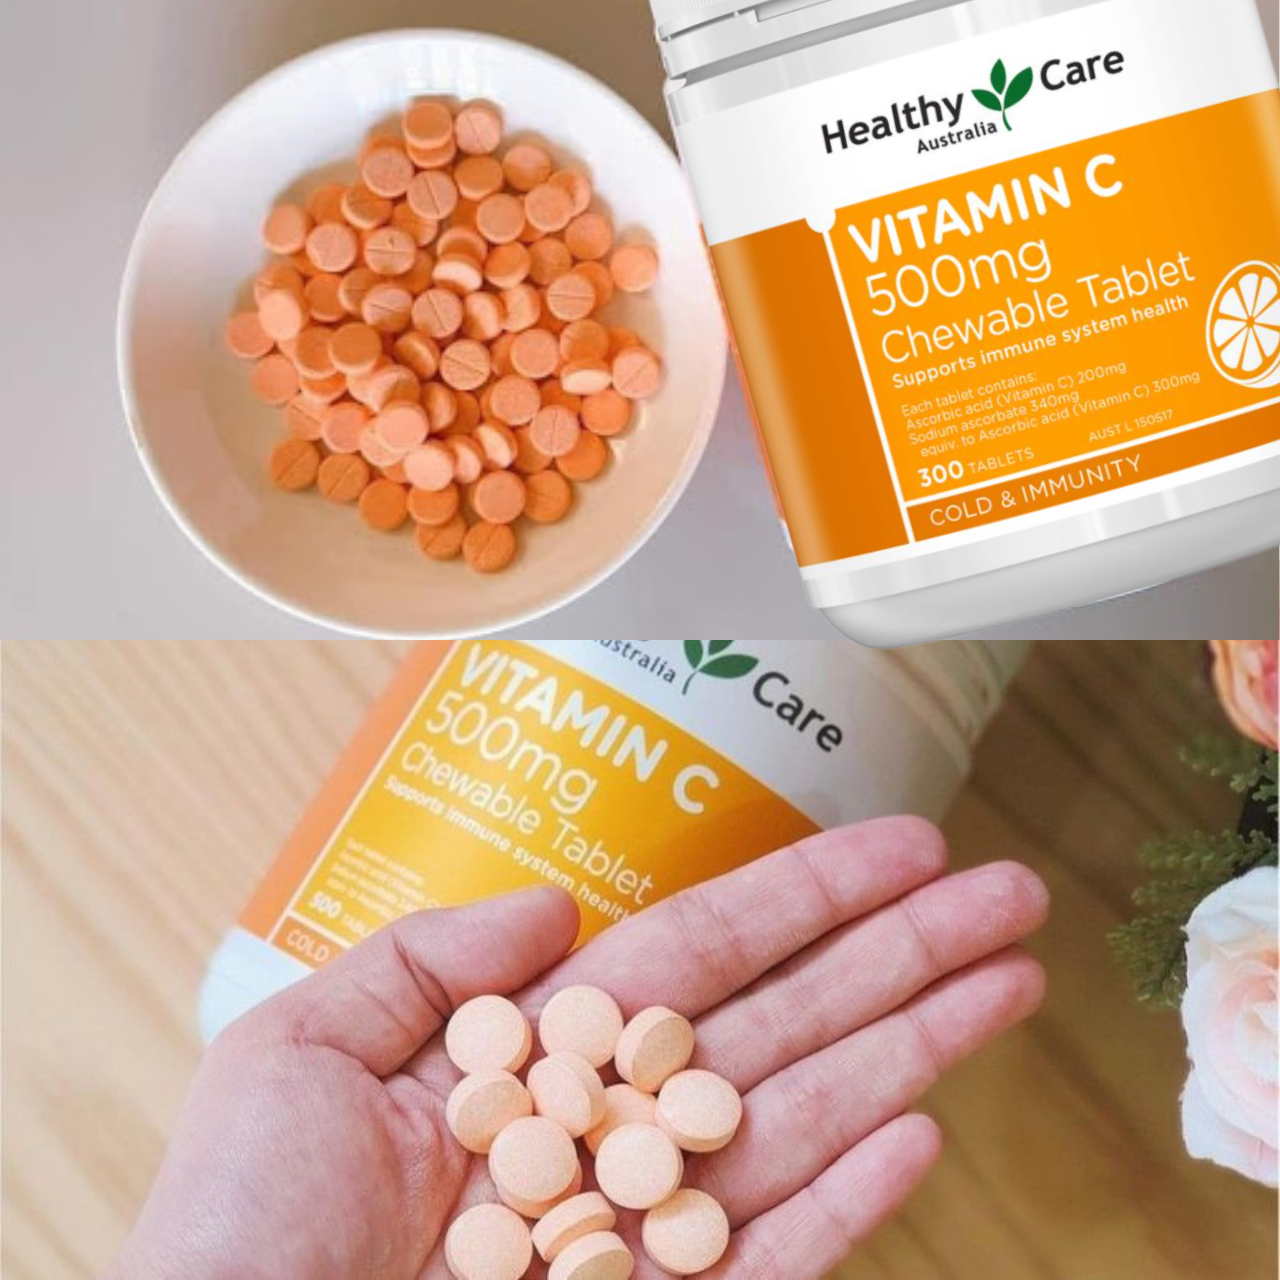 Vitamin C Úc Healthy Care Vitamin C 500mg Chewable